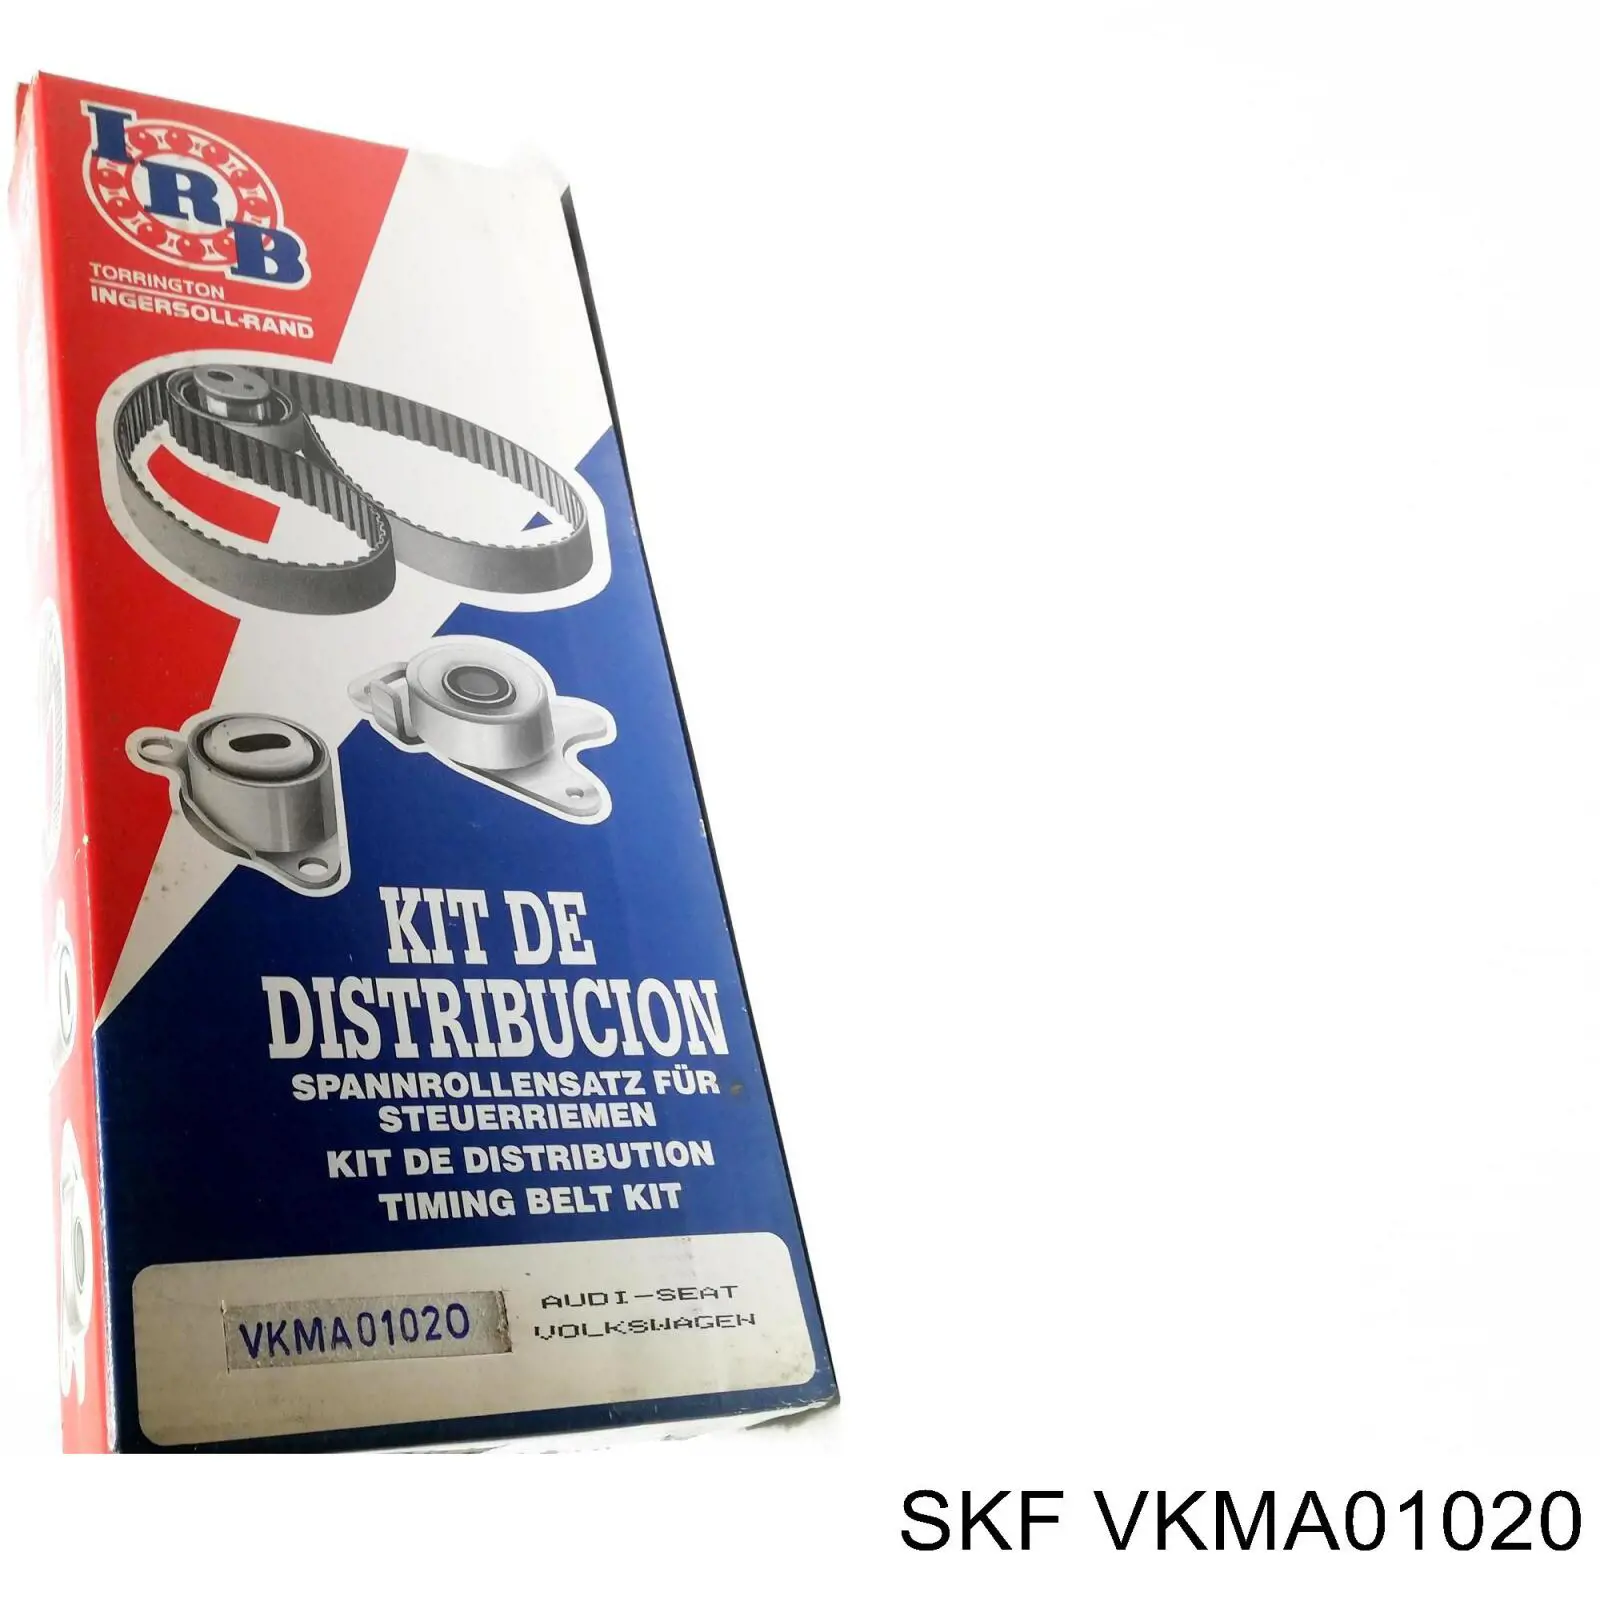 VKMA 01020 SKF kit de correa de distribución